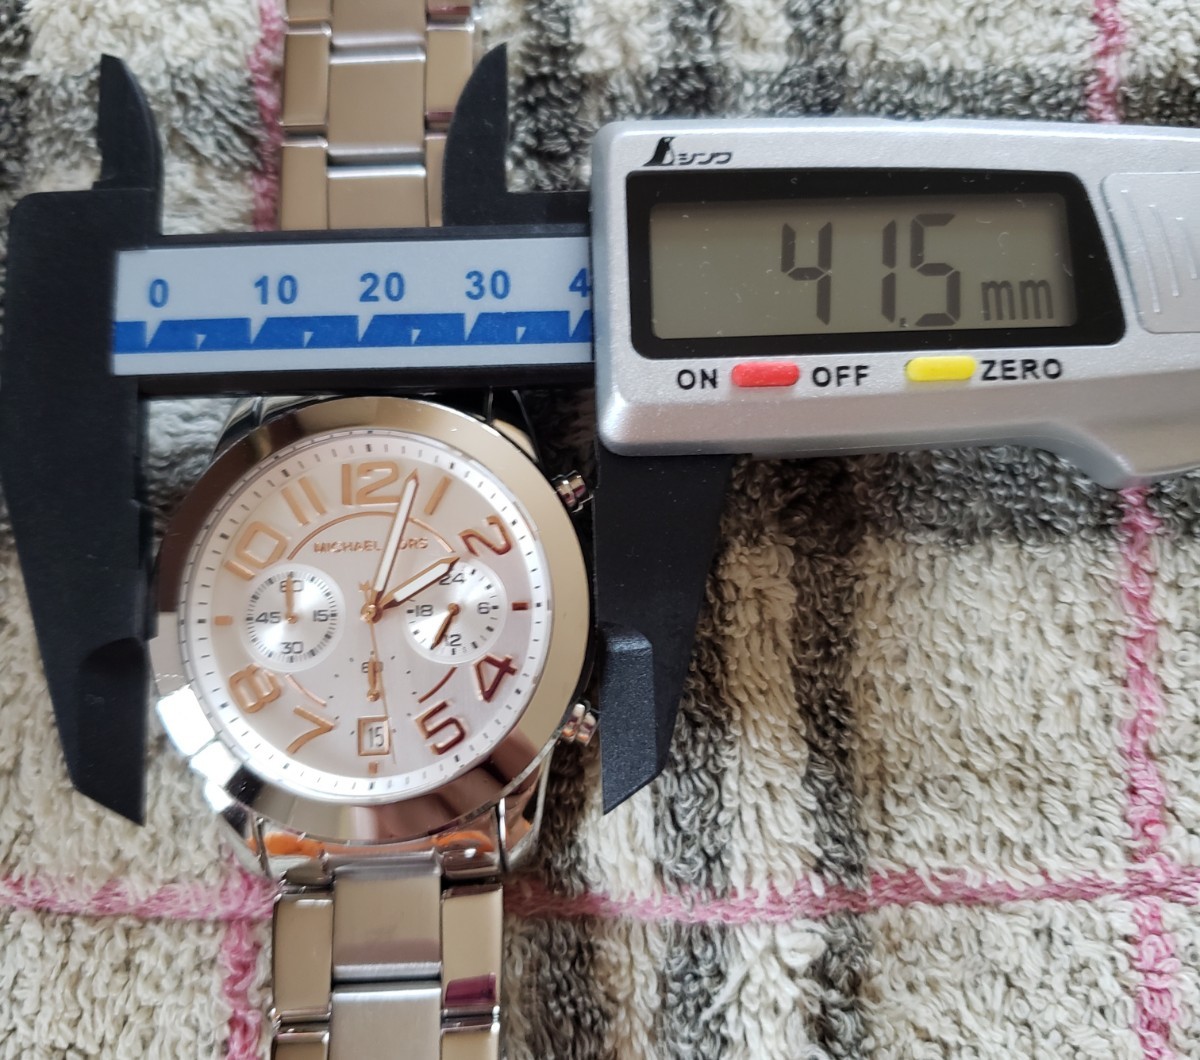 【新品電池交換済】 MICHAEL KORS 腕時計 レディース マイケルコース